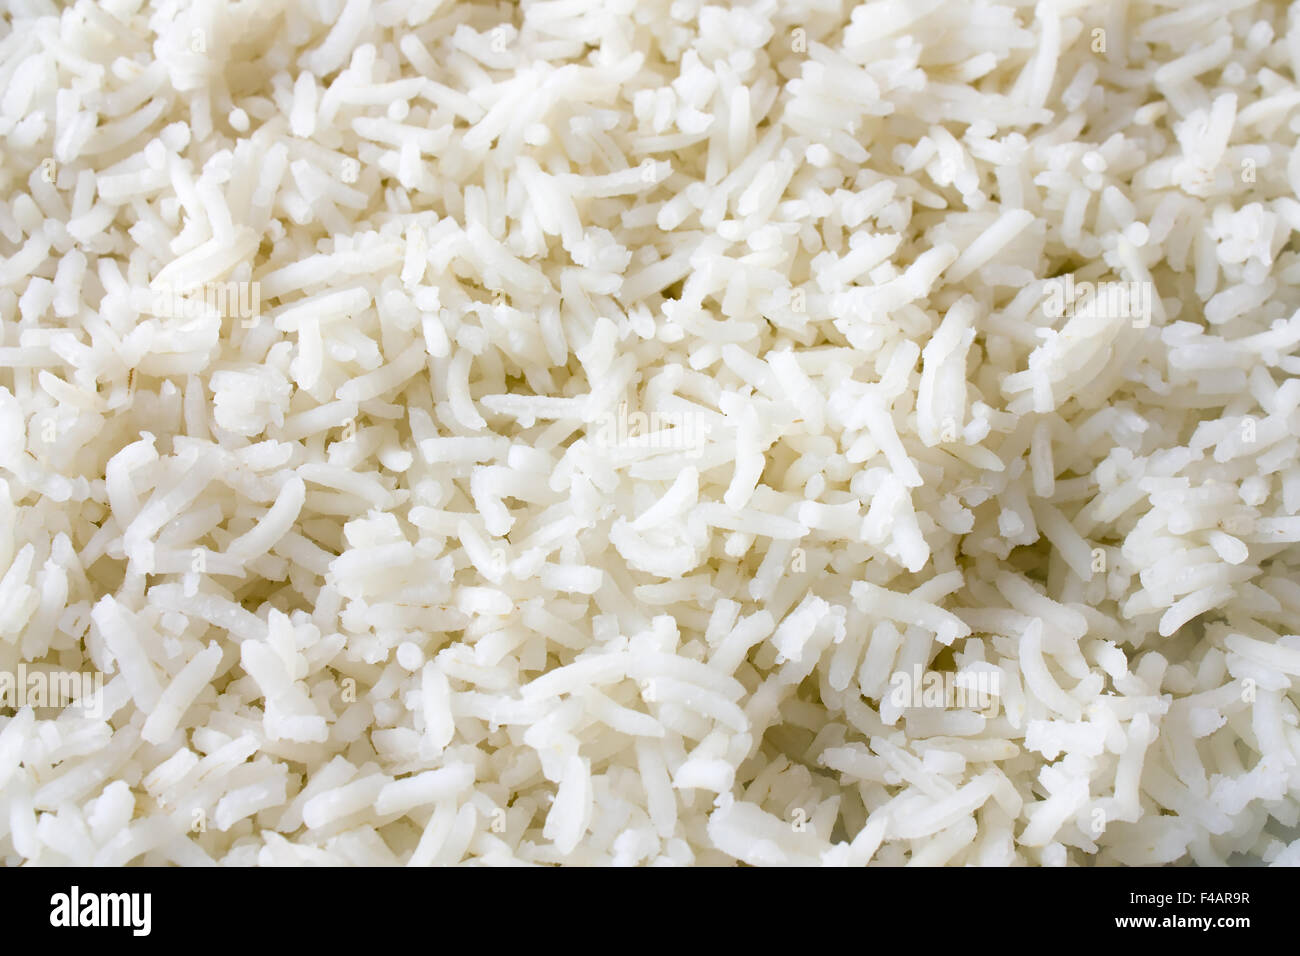 Weißer Reis - Arroz blanco Foto de stock